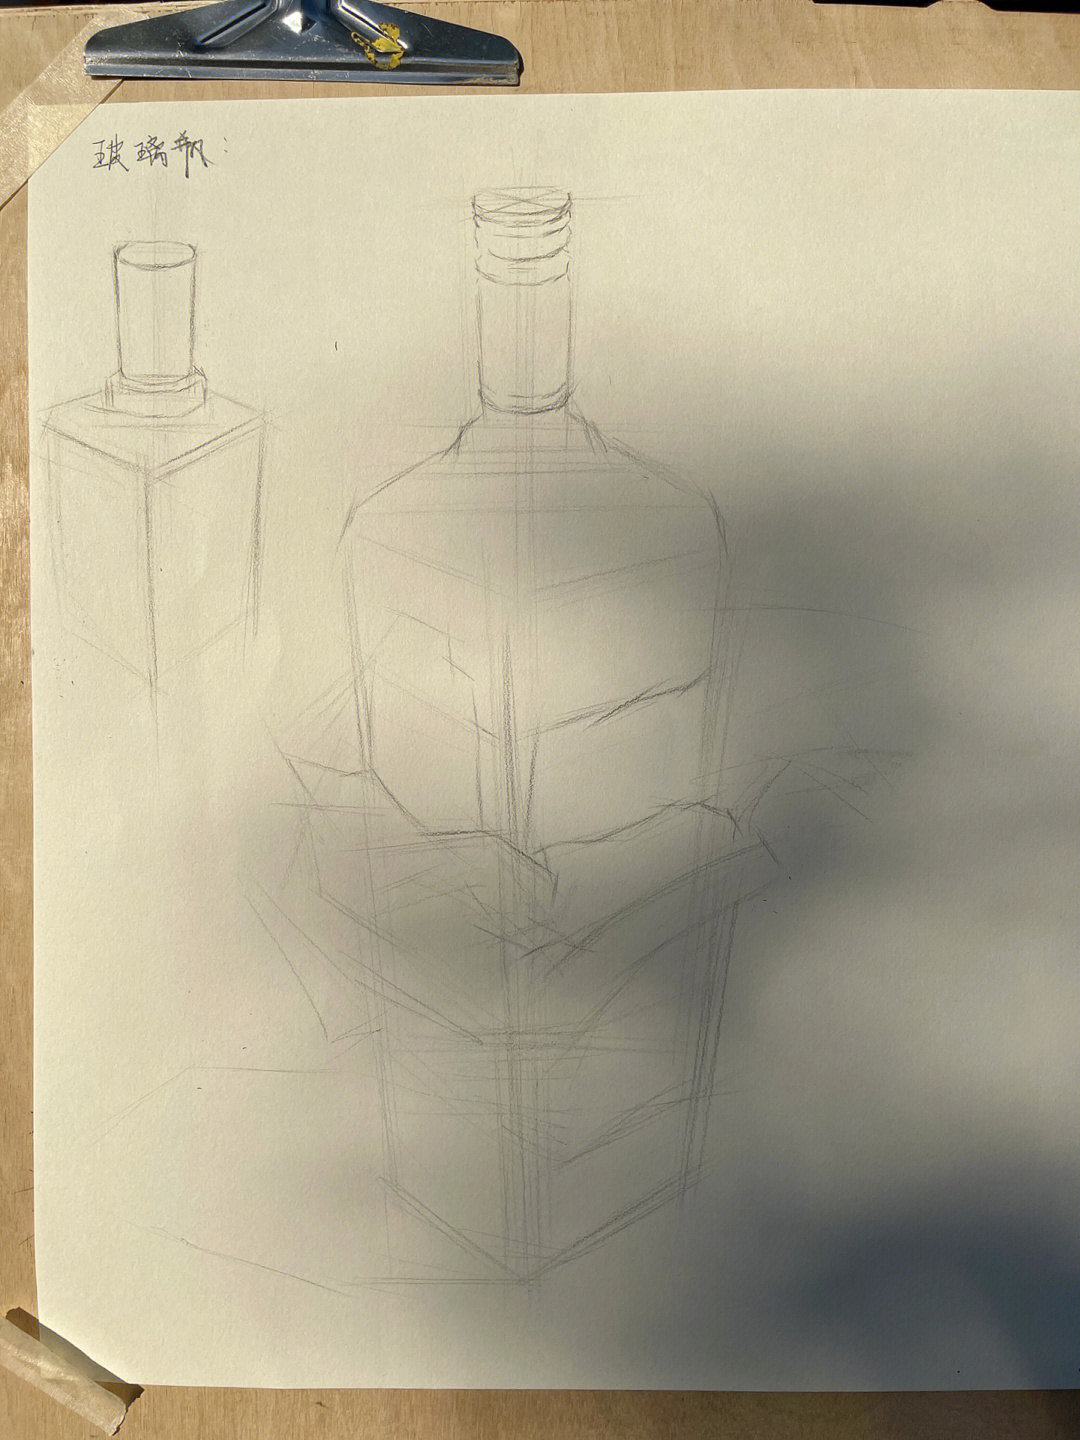 玻璃质感酒瓶素描详细步骤图